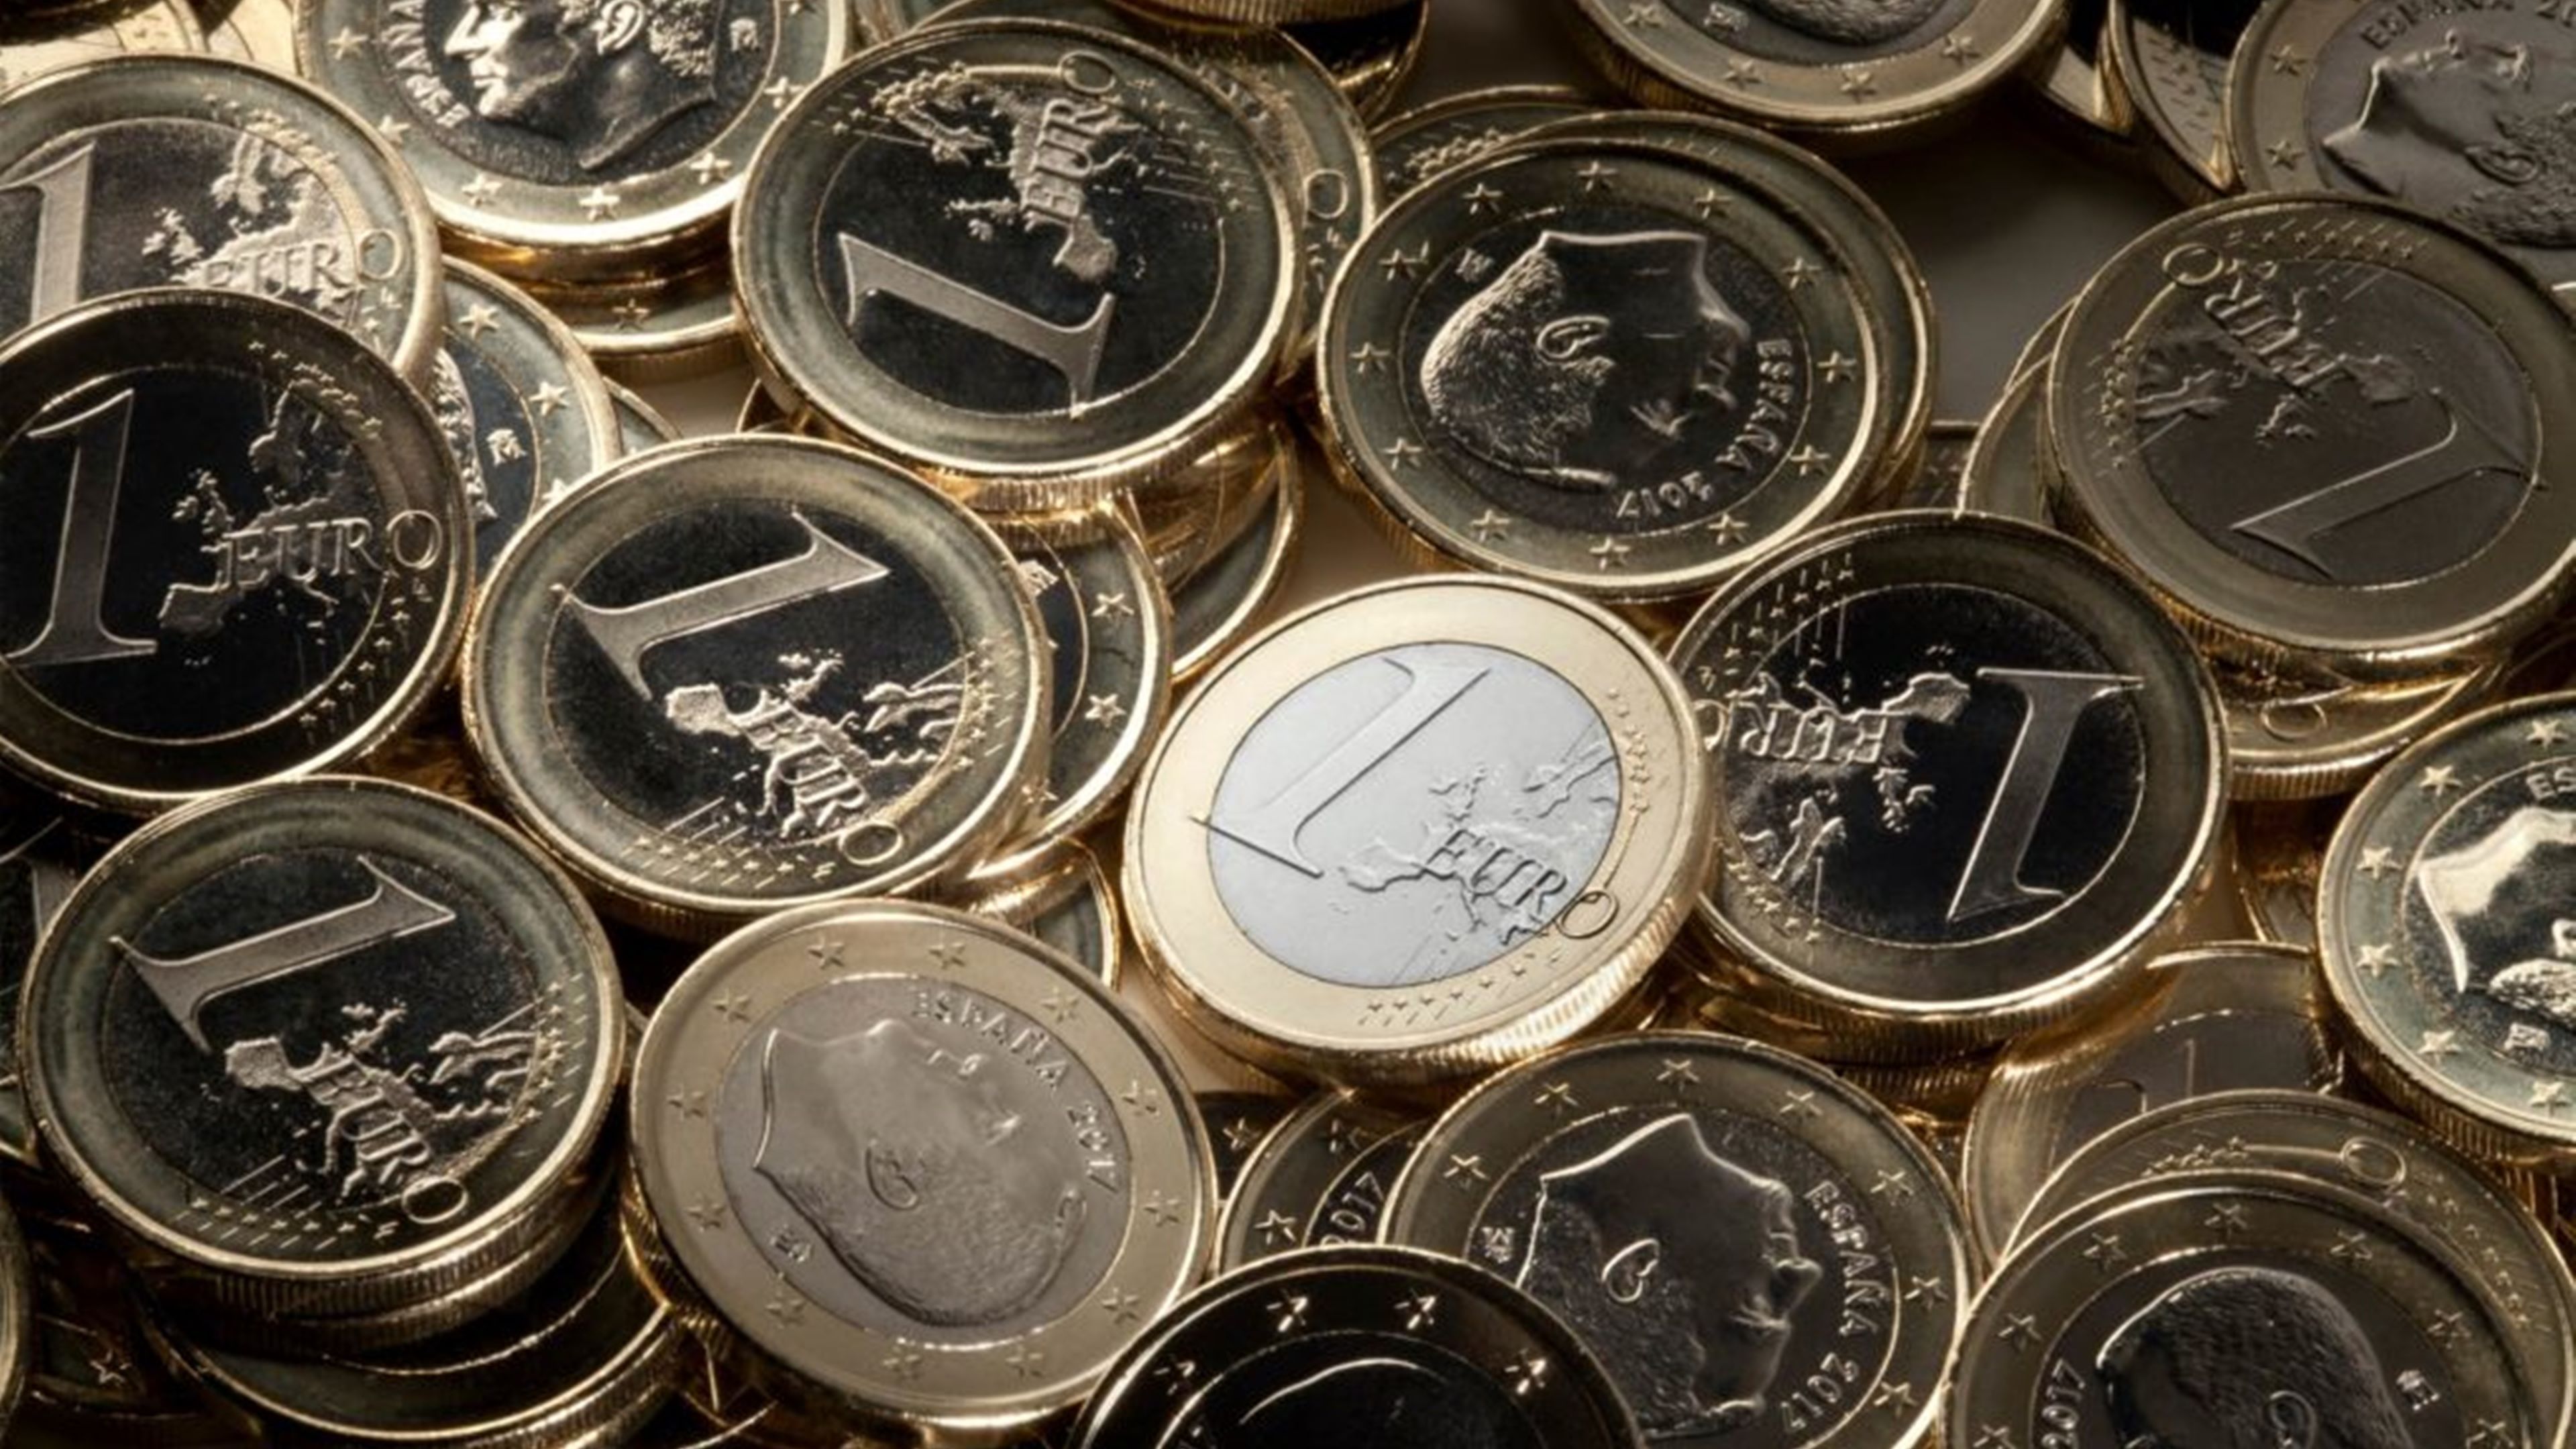 ¡Revisa tus bolsillos! Monedas de euro en circulación con errores que valen una fortuna